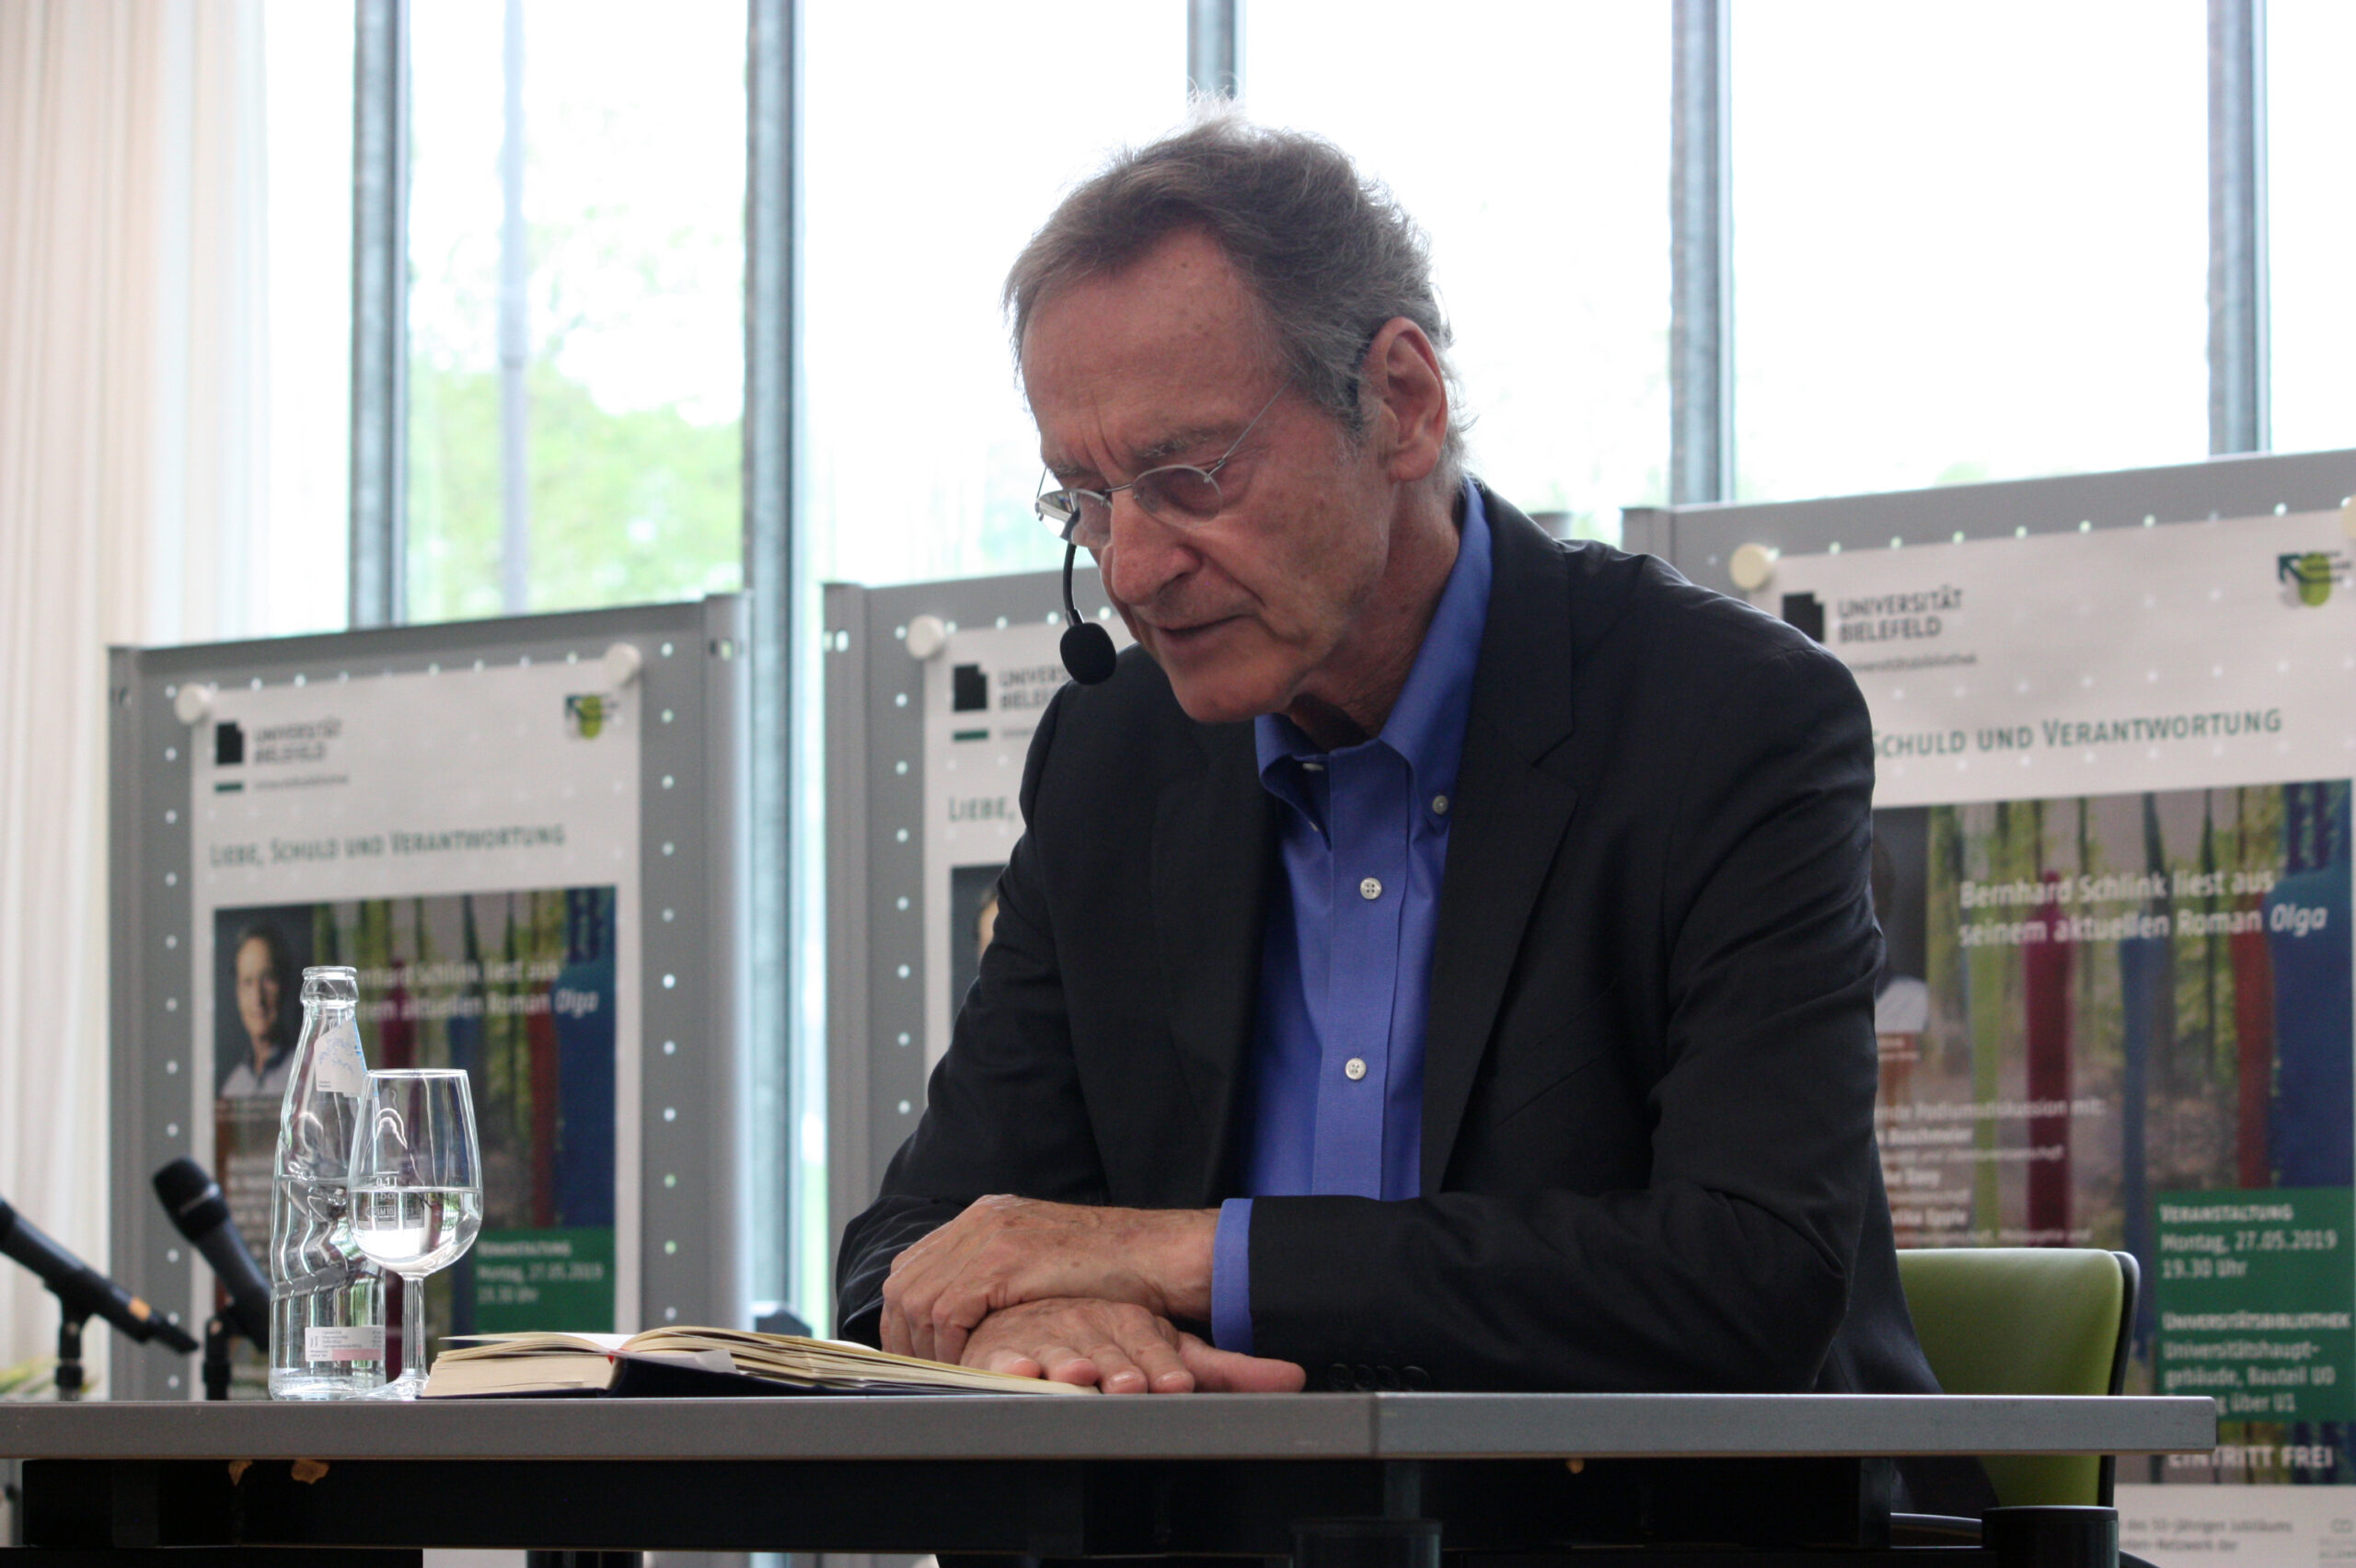 Bernhard Schlink liest aus seinem Roman "Olga". Foto: Universität Bielefeld/A. Hermwille